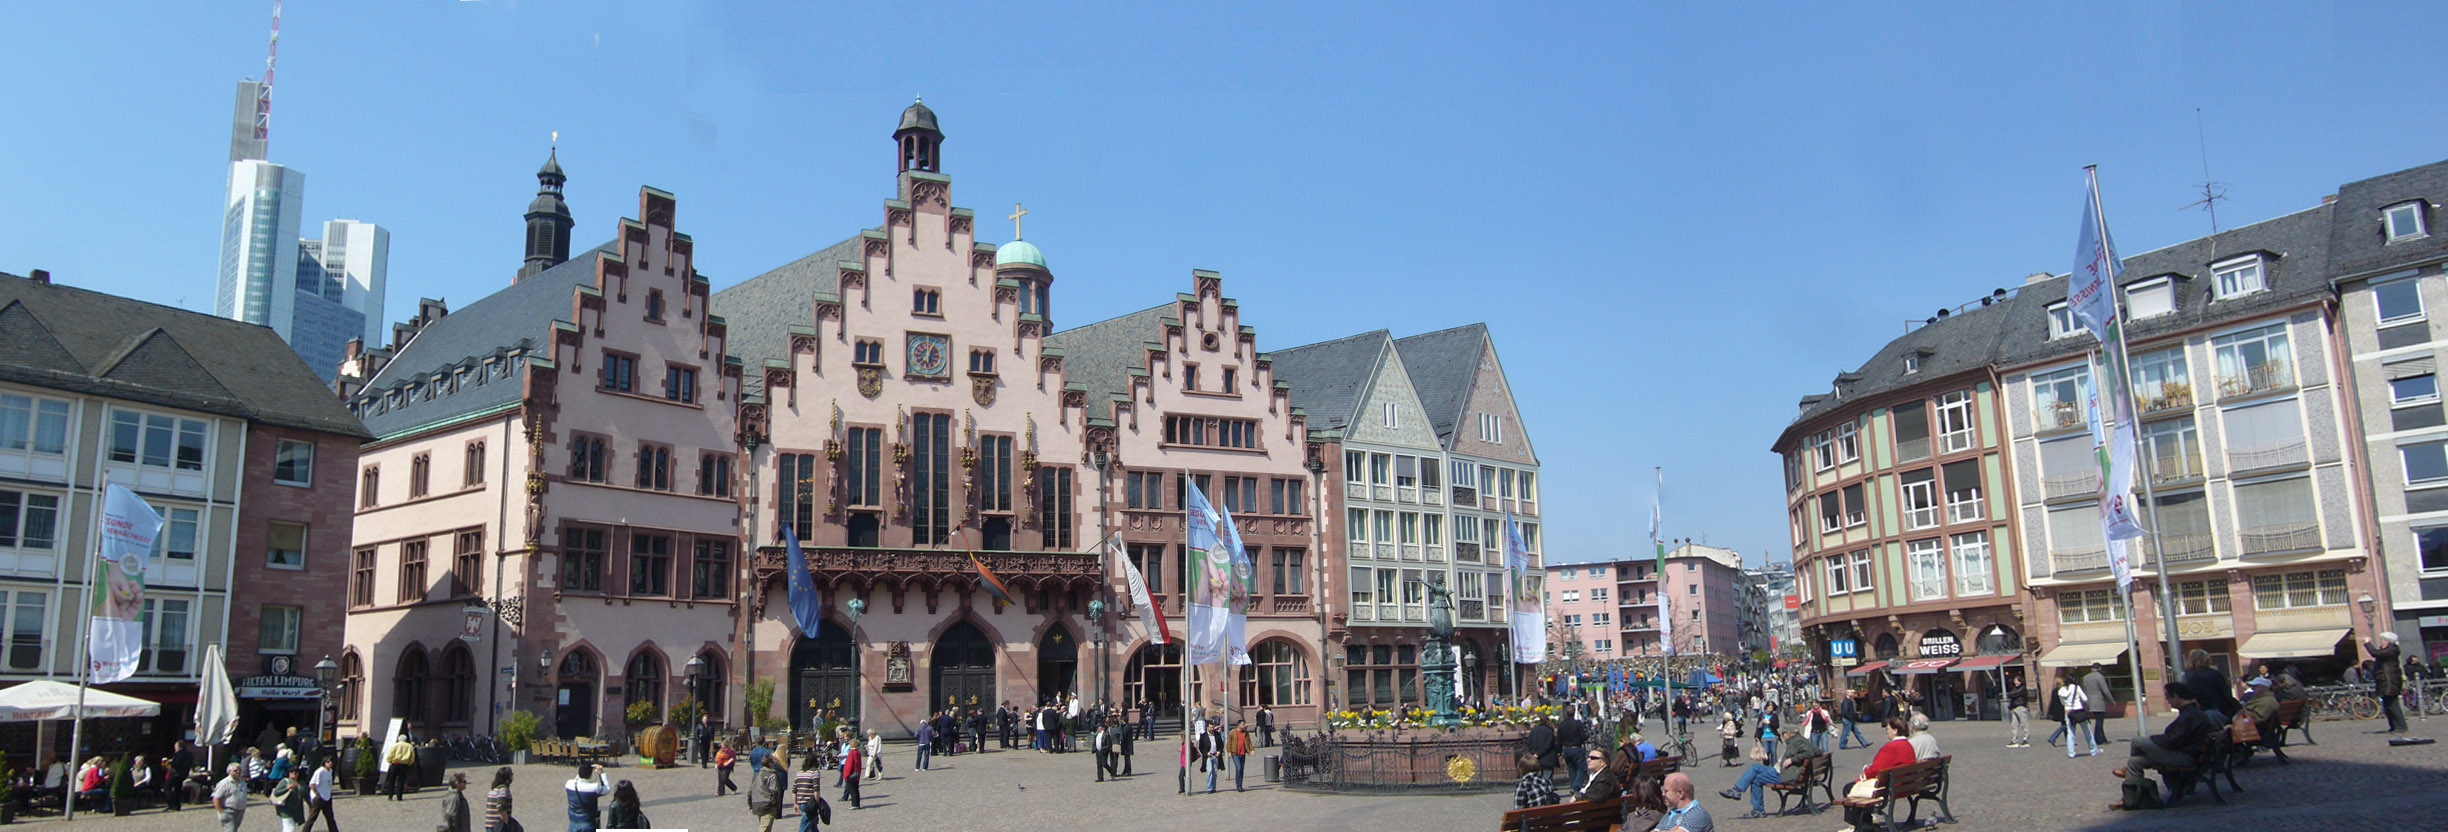 Rathaus во Франкфурте